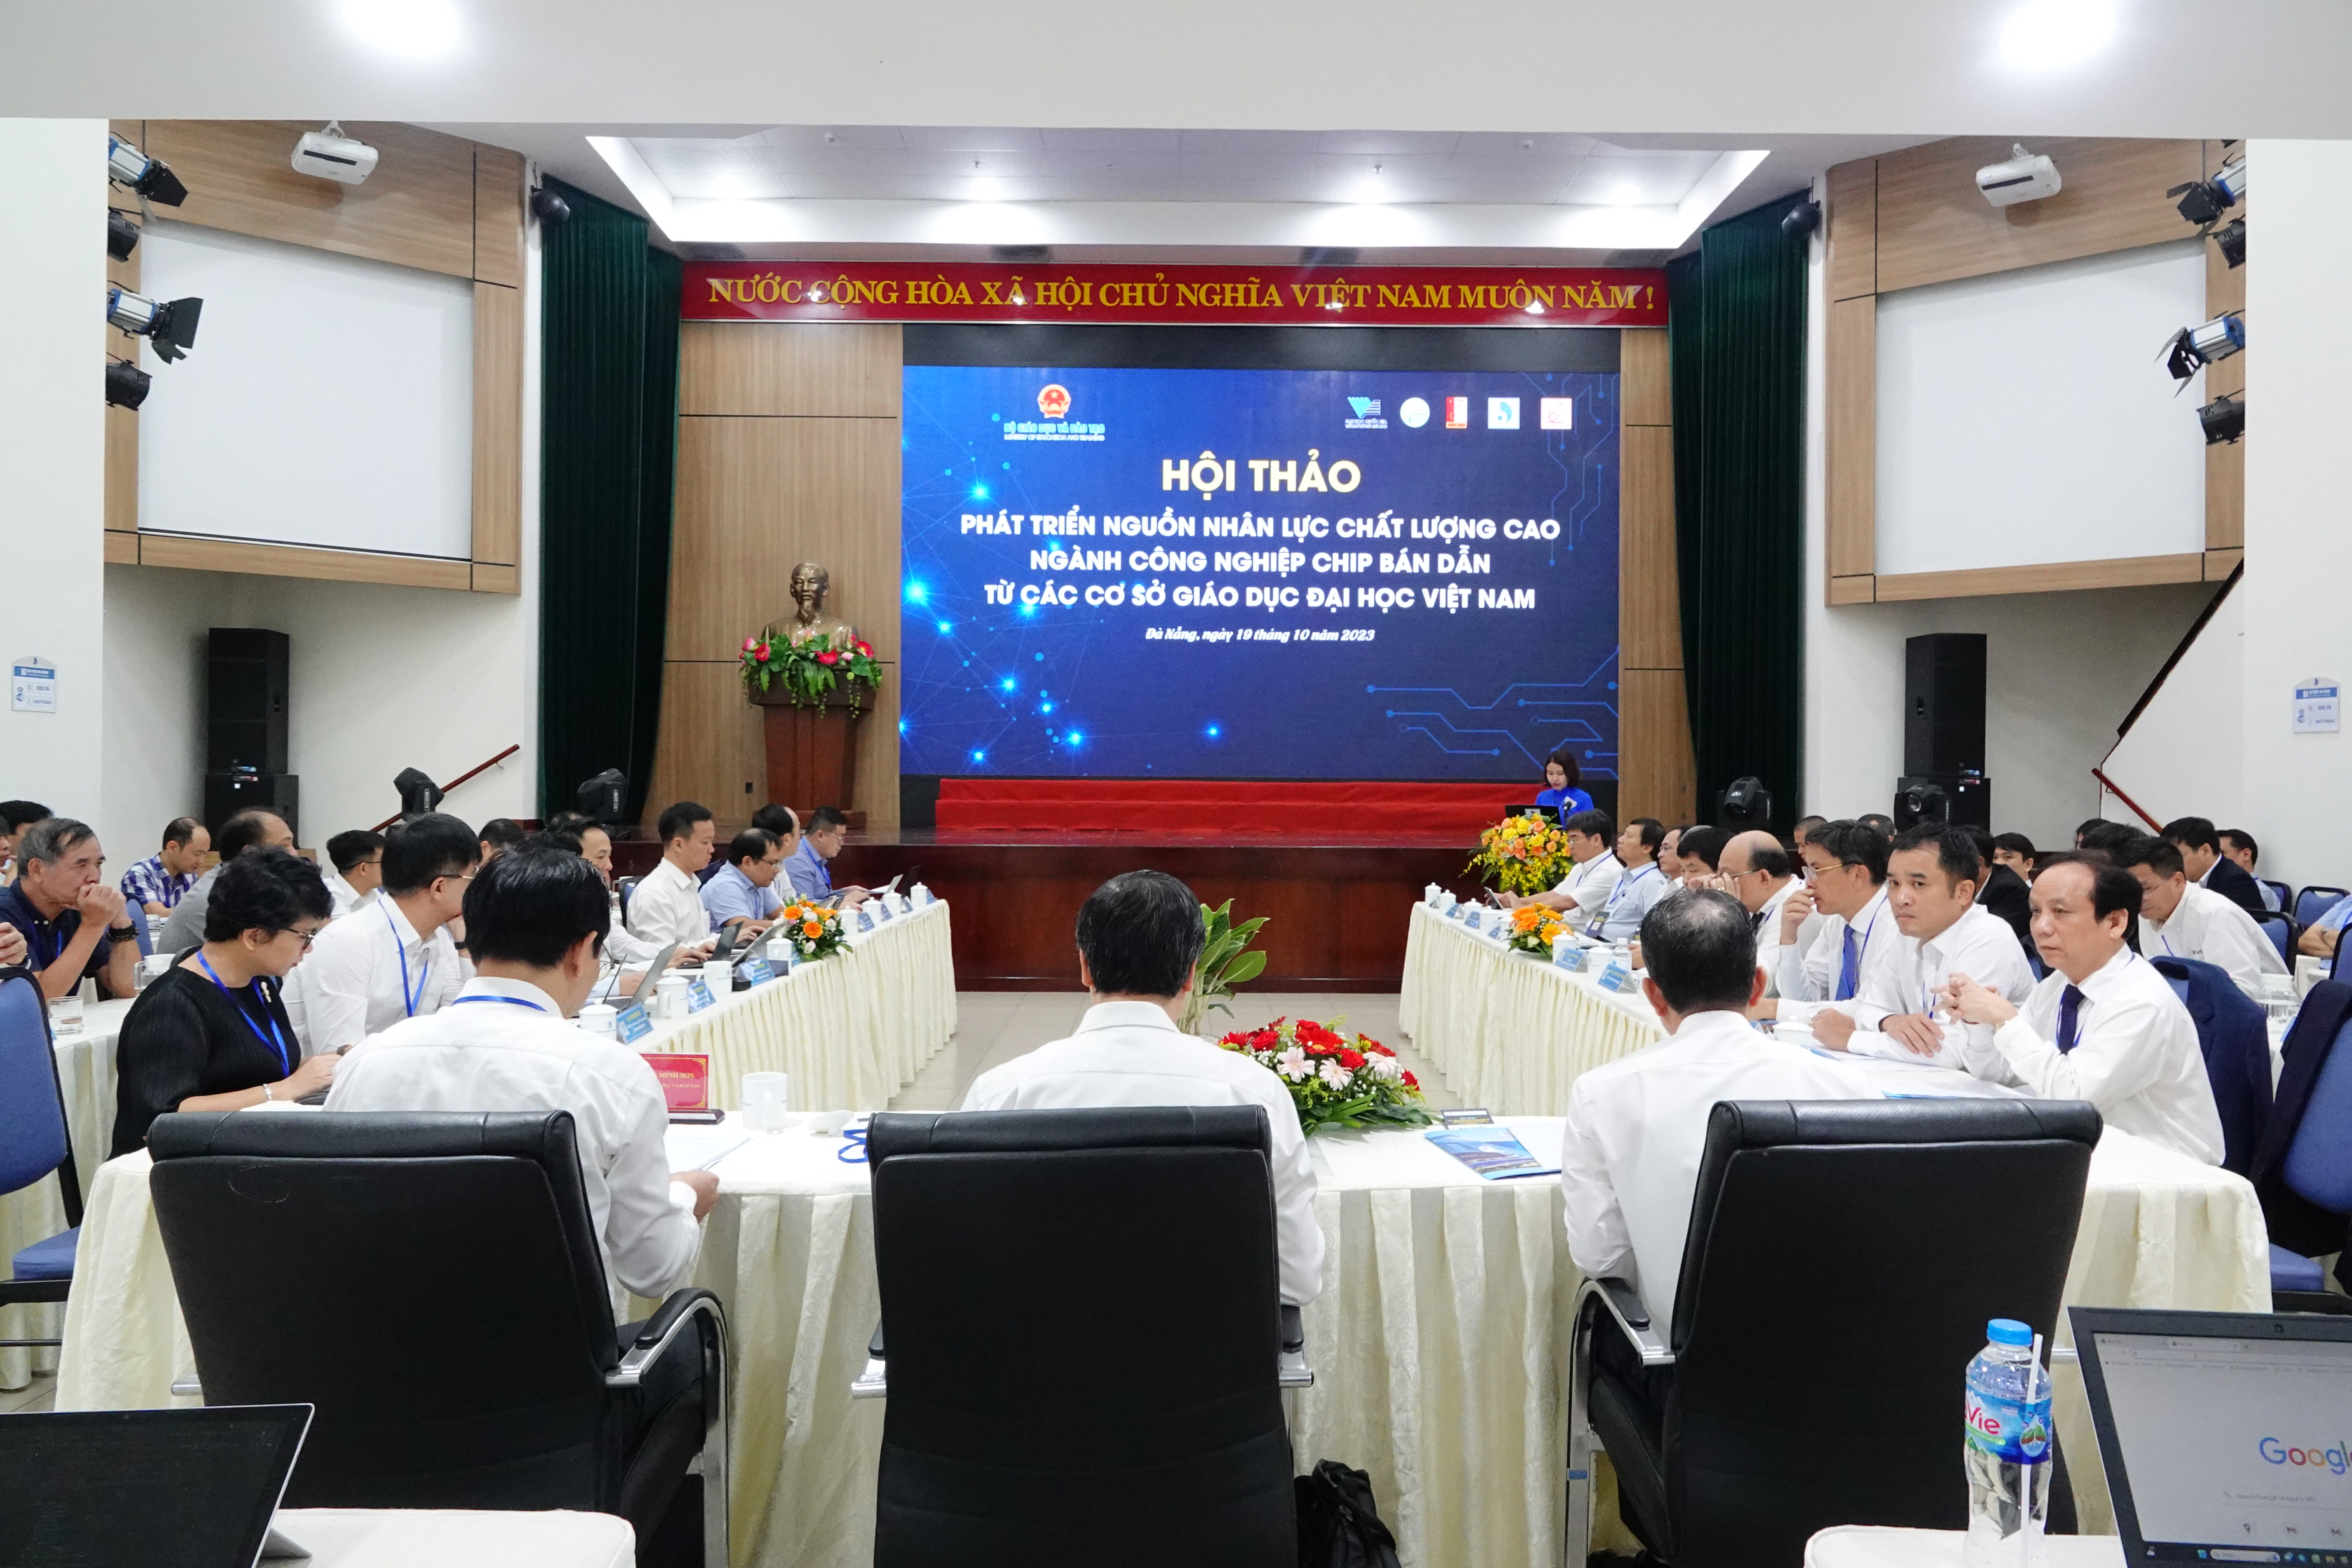 Quang cảnh Hội thảo Phát triển nguồn nhân lực chất lượng cao ngành công nghiệp chip bán dẫn từ các cơ sở giáo dục đại học Việt Nam. ảnh 1